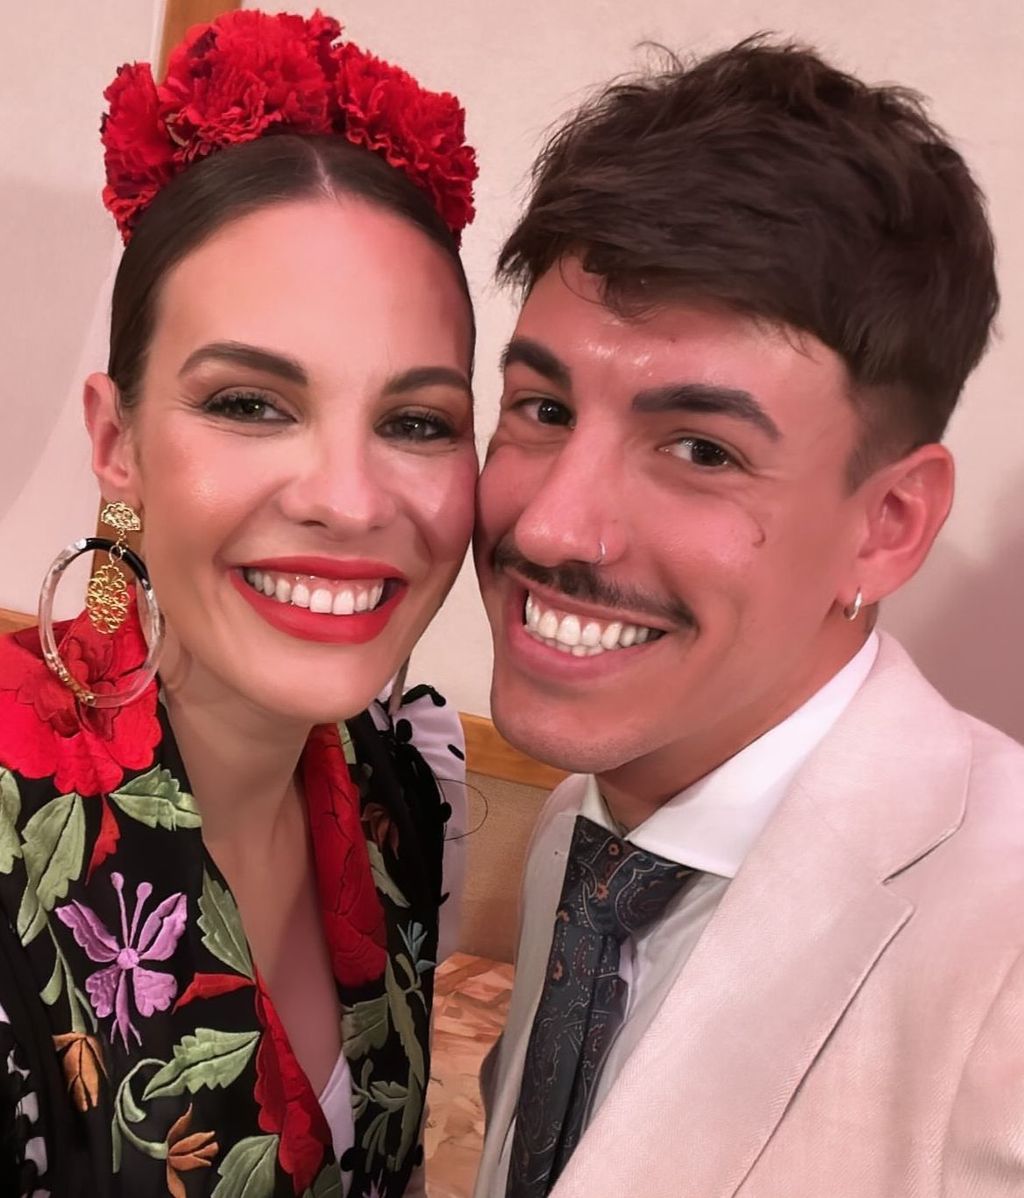 Jessica Bueno y Luitingo se hacen un selfie en la Feria de Sevilla